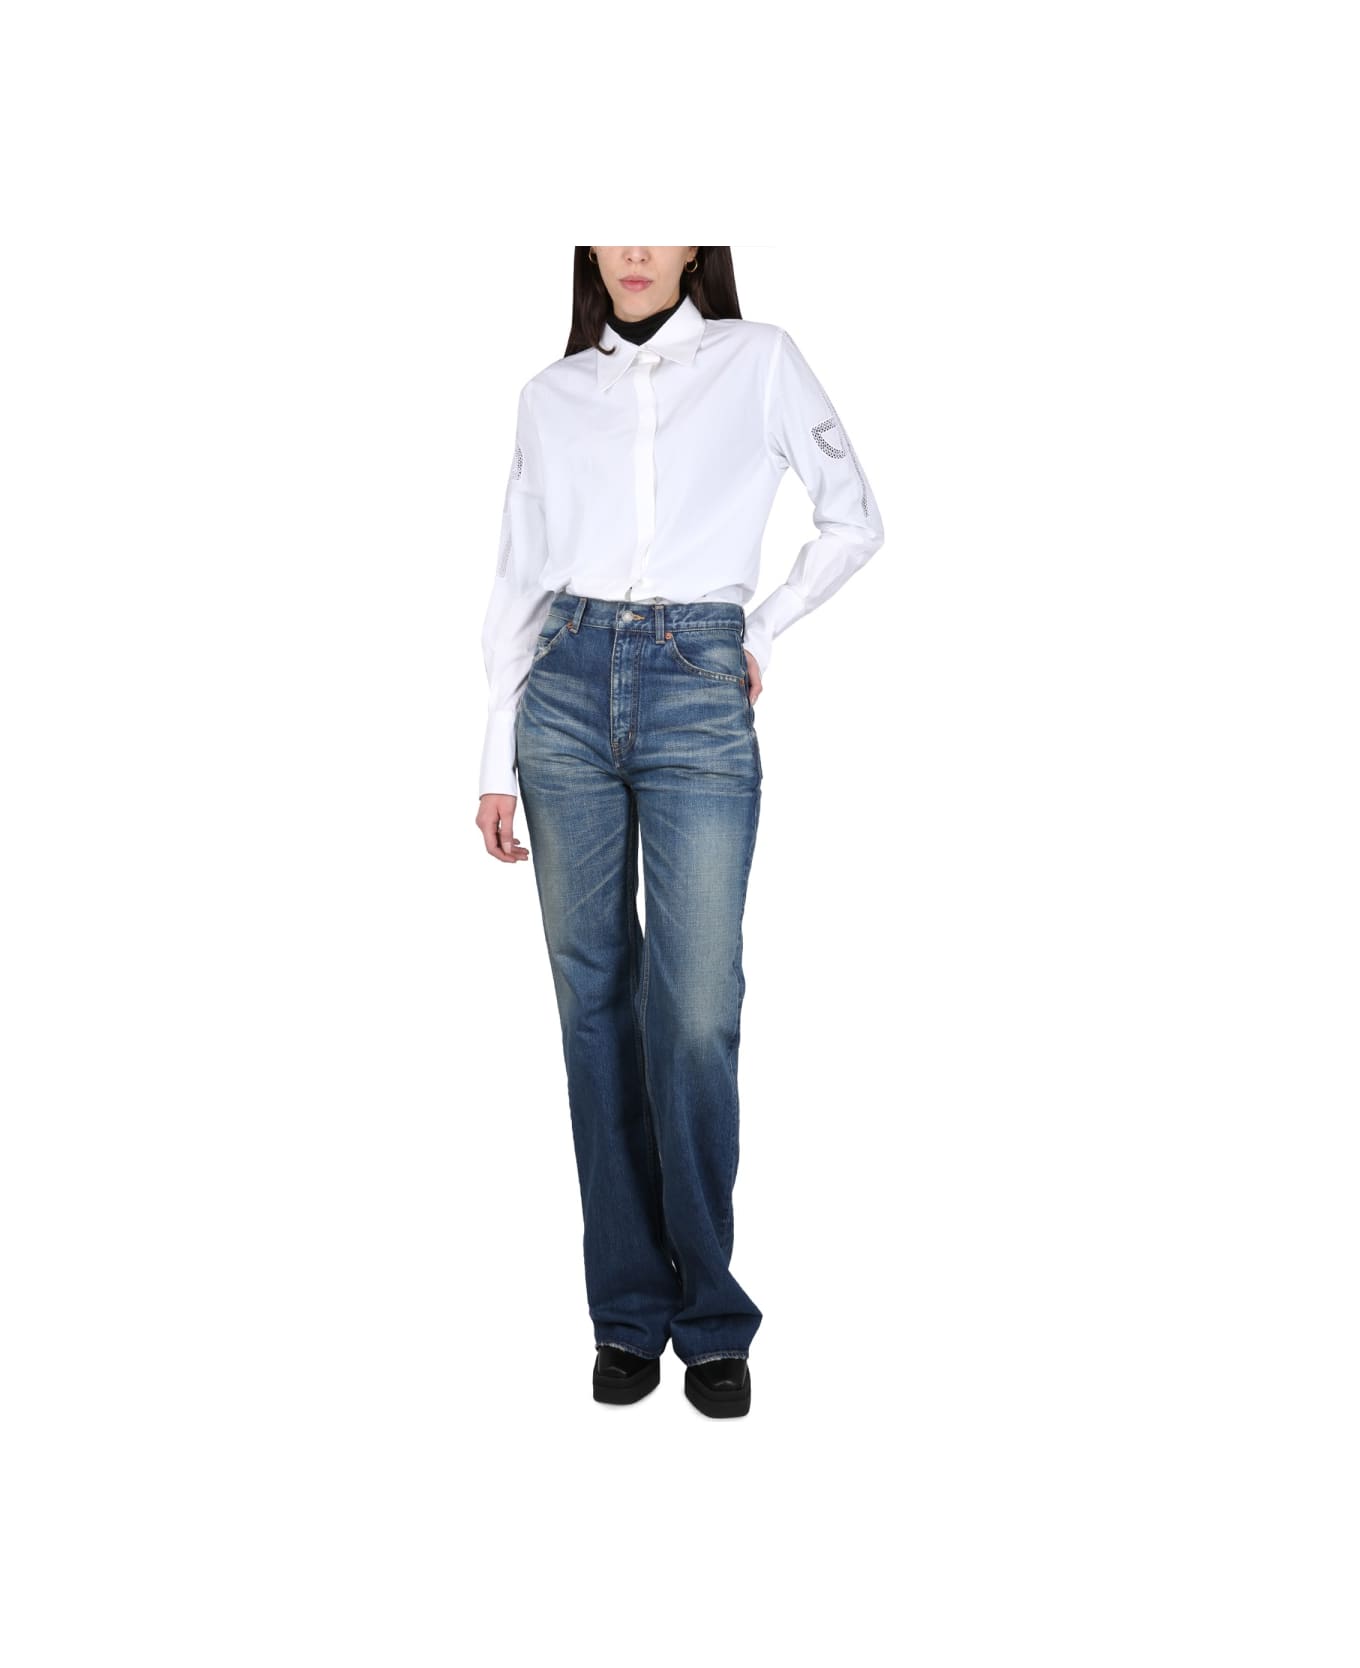 Patou Cotton Poplin Shirt - WHITE シャツ